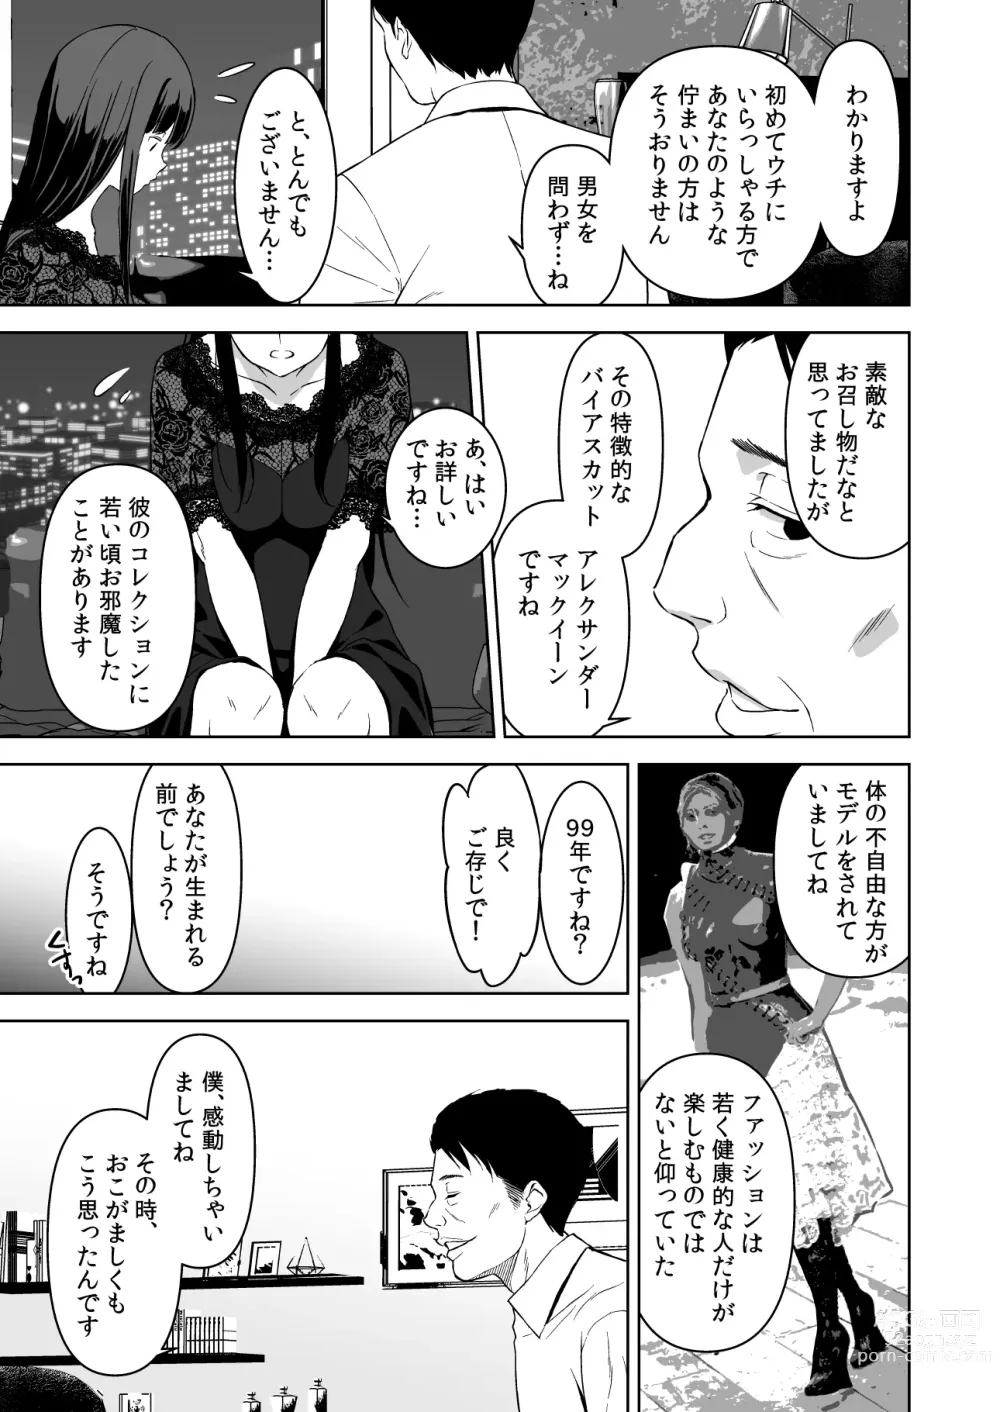 Page 12 of doujinshi Ane to Bitch no Hito ni wa Ienai Minatoku Tawaman Party Night